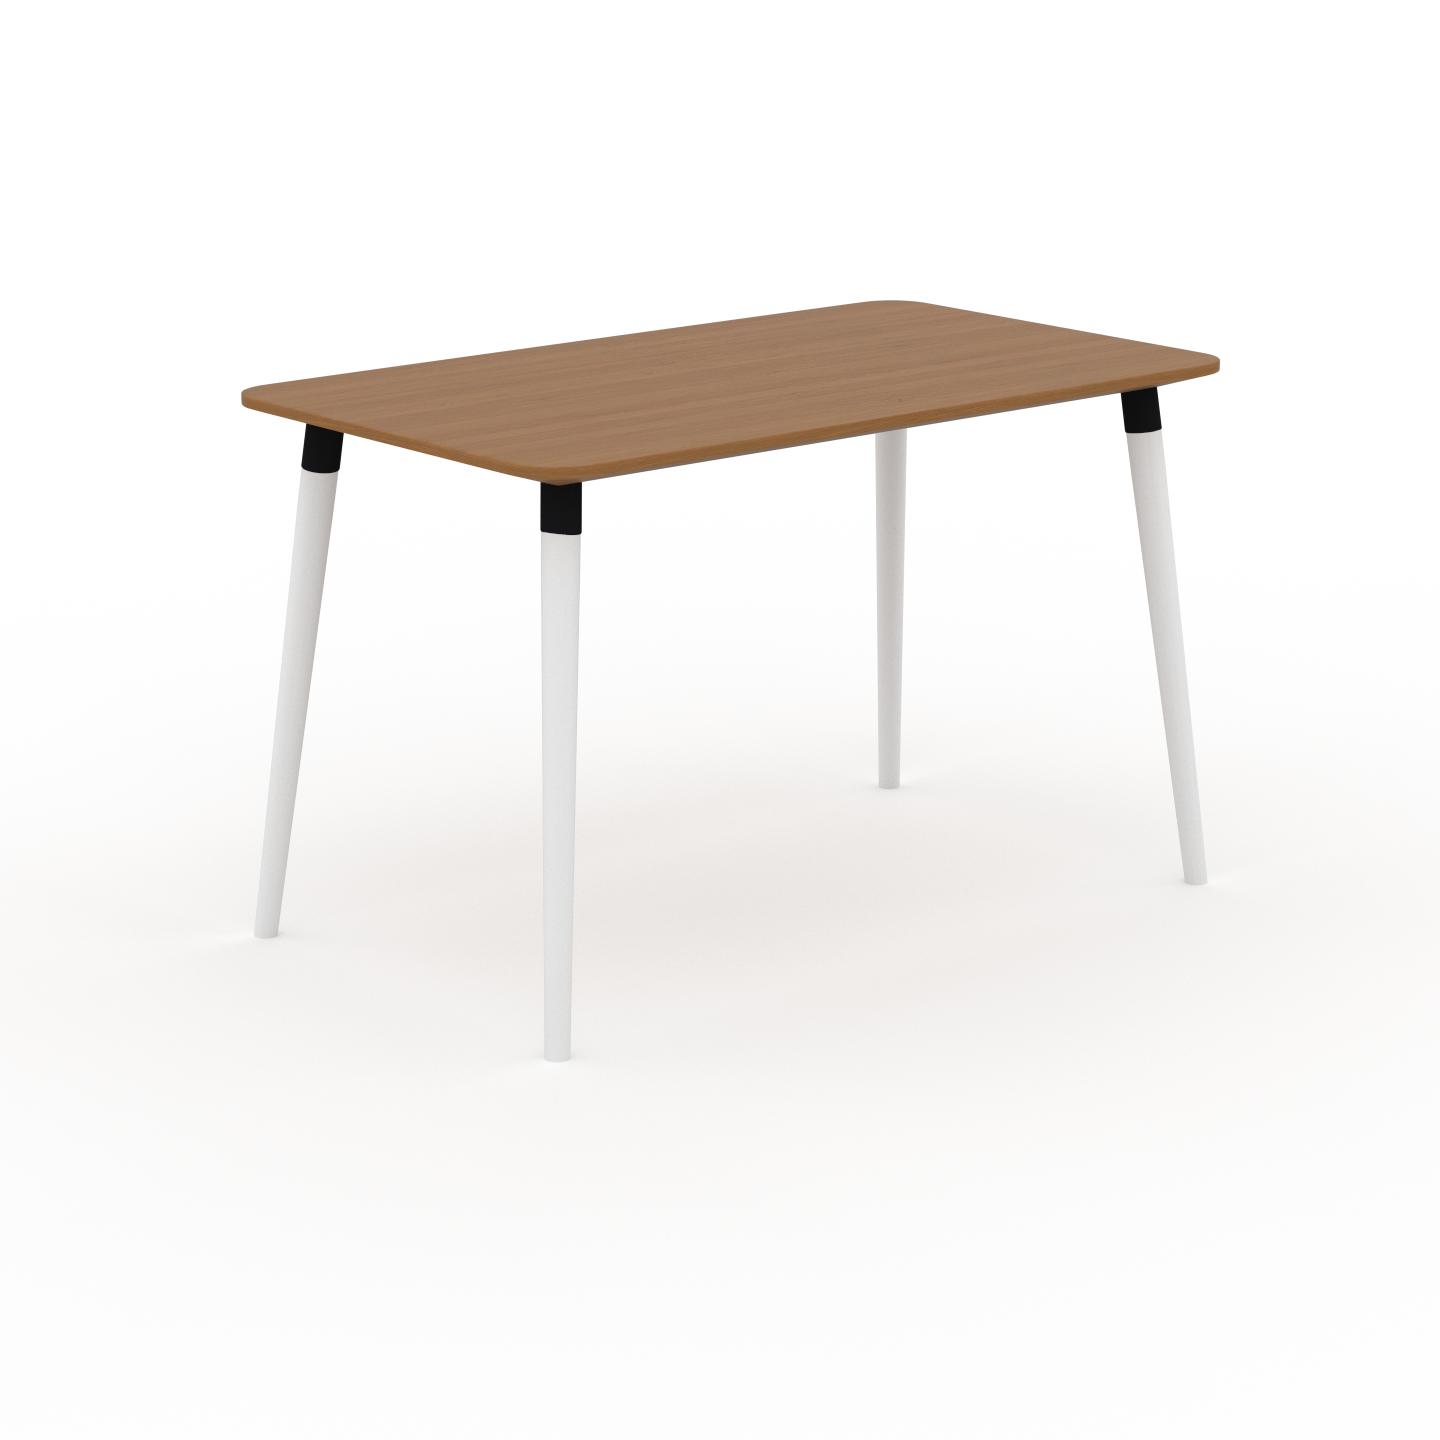 MYCS Schreibtisch Massivholz Eiche, Holz - Moderner Massivholz-Schreibtisch: Einzigartiges Design - 120 x 75 x 70 cm, konfigurierbar